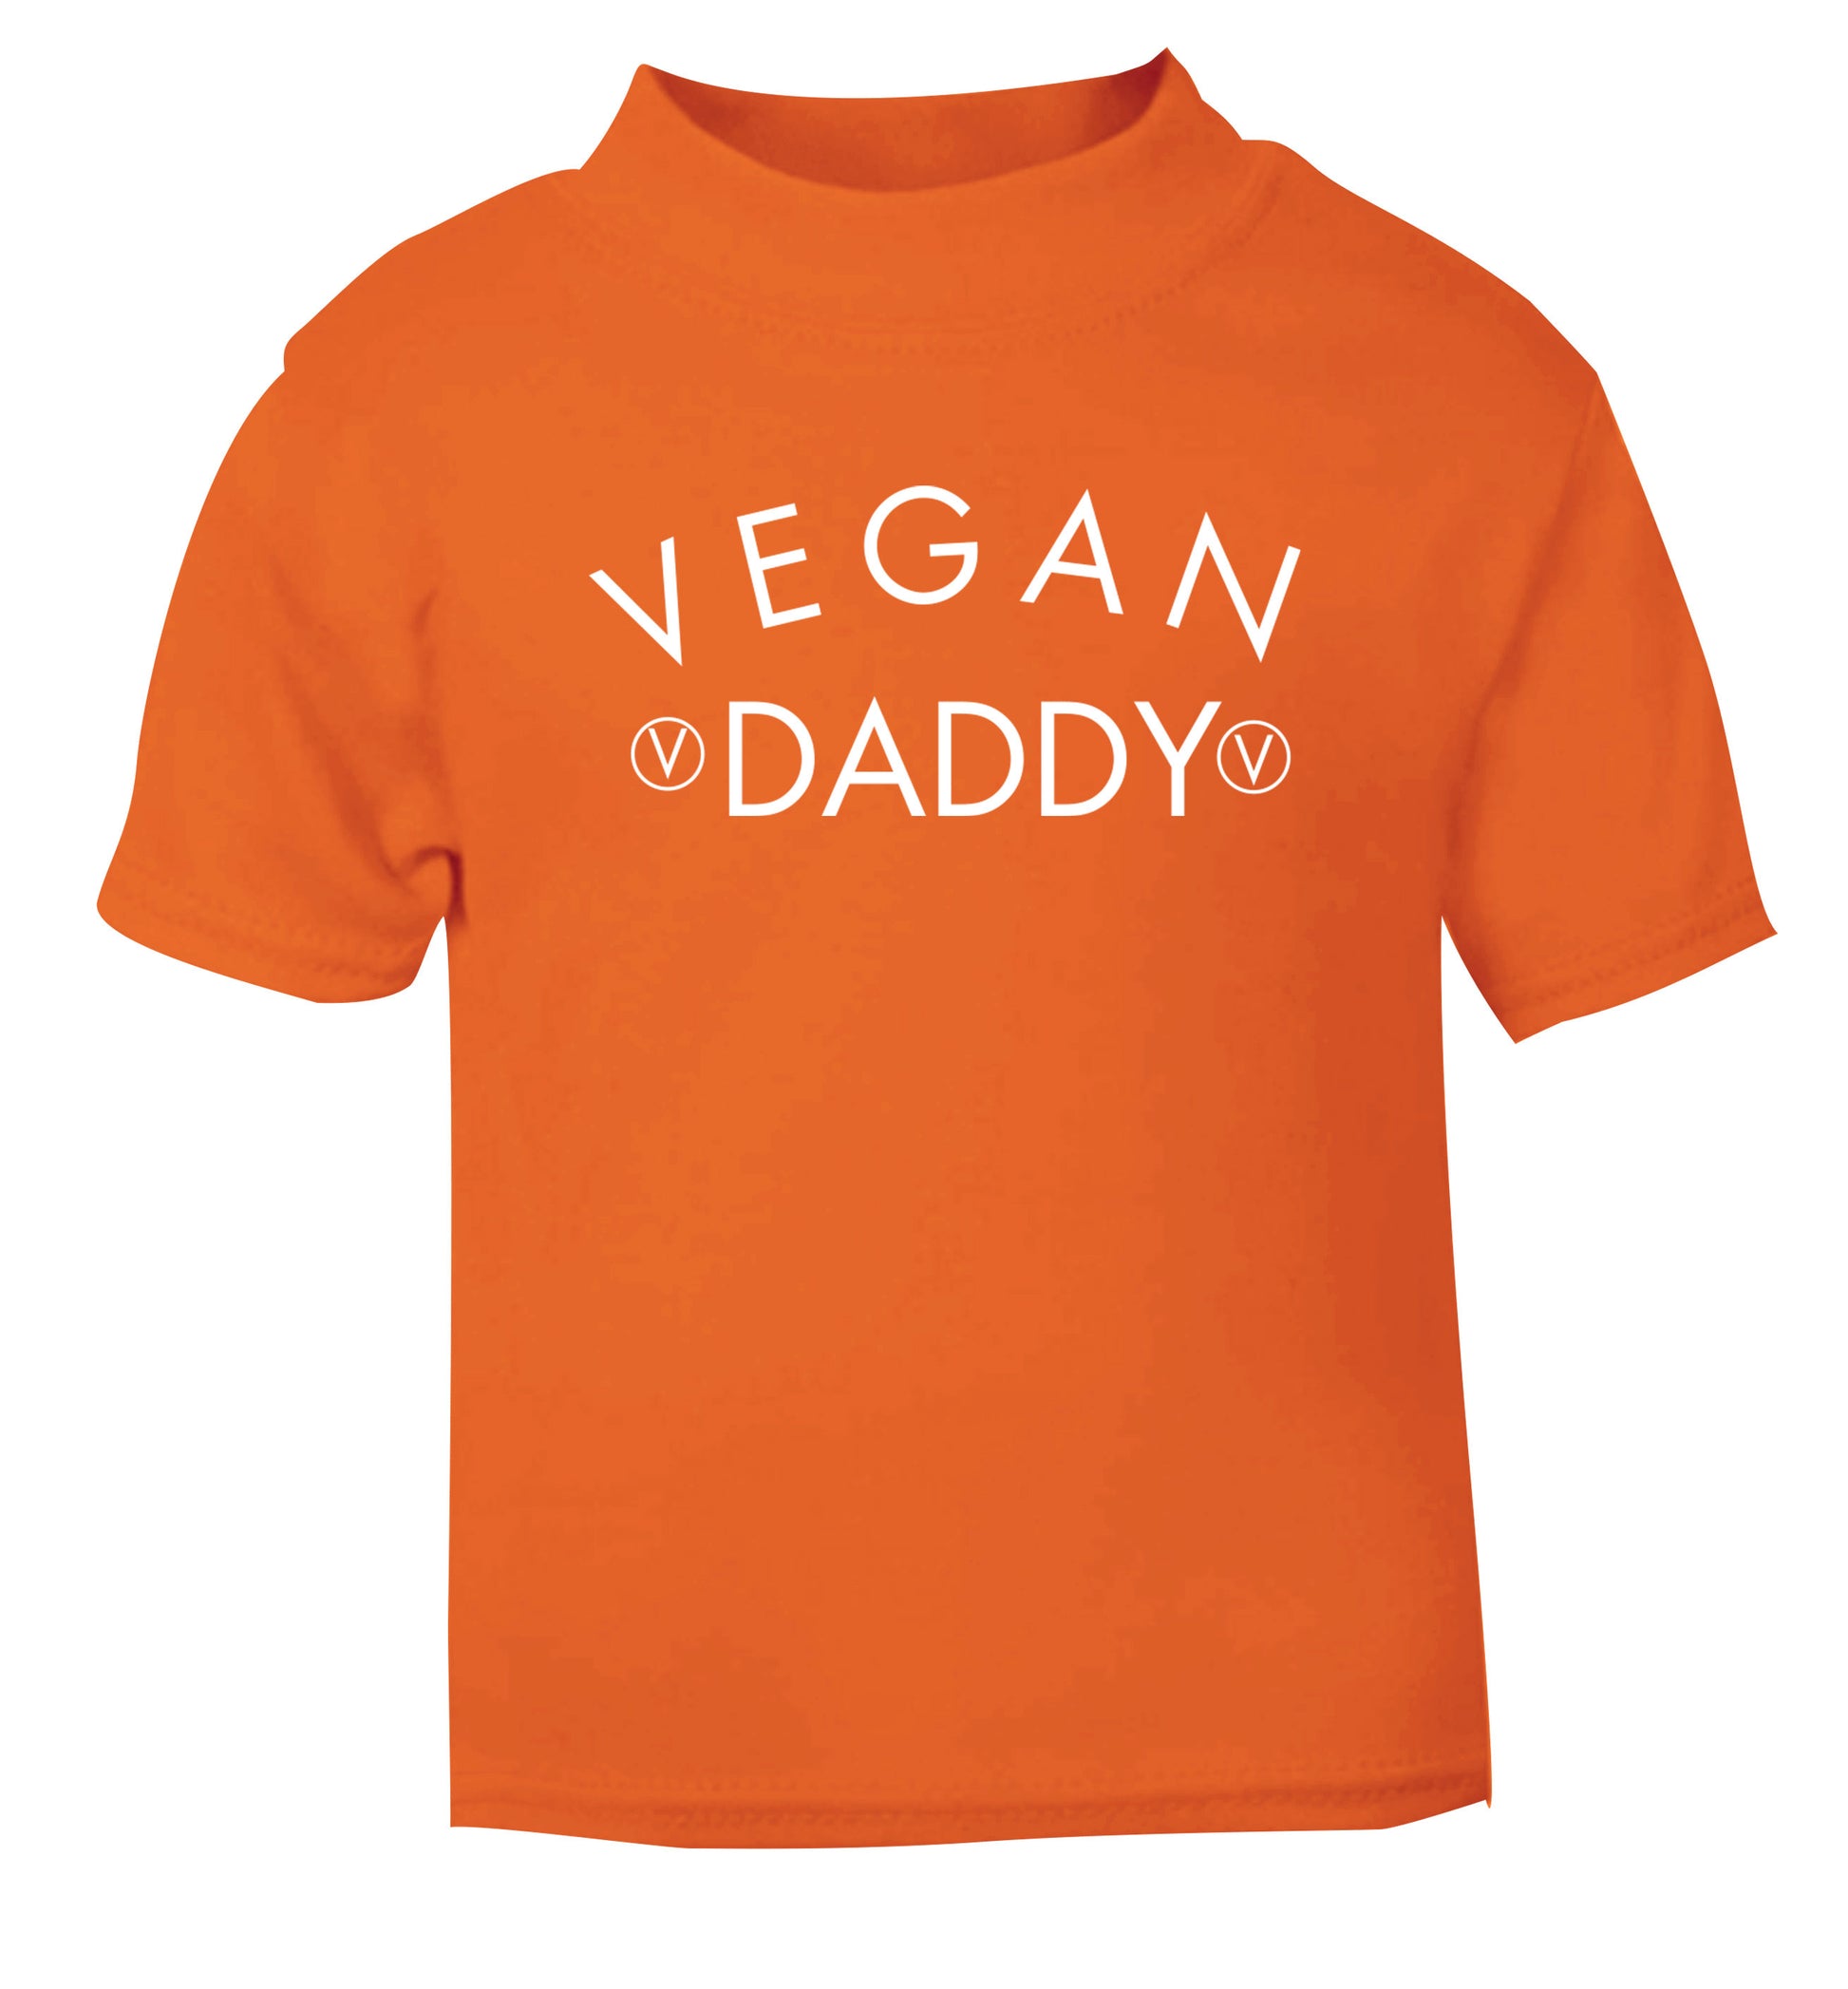 Vegan daddy orange Baby Toddler Tshirt 2 Years